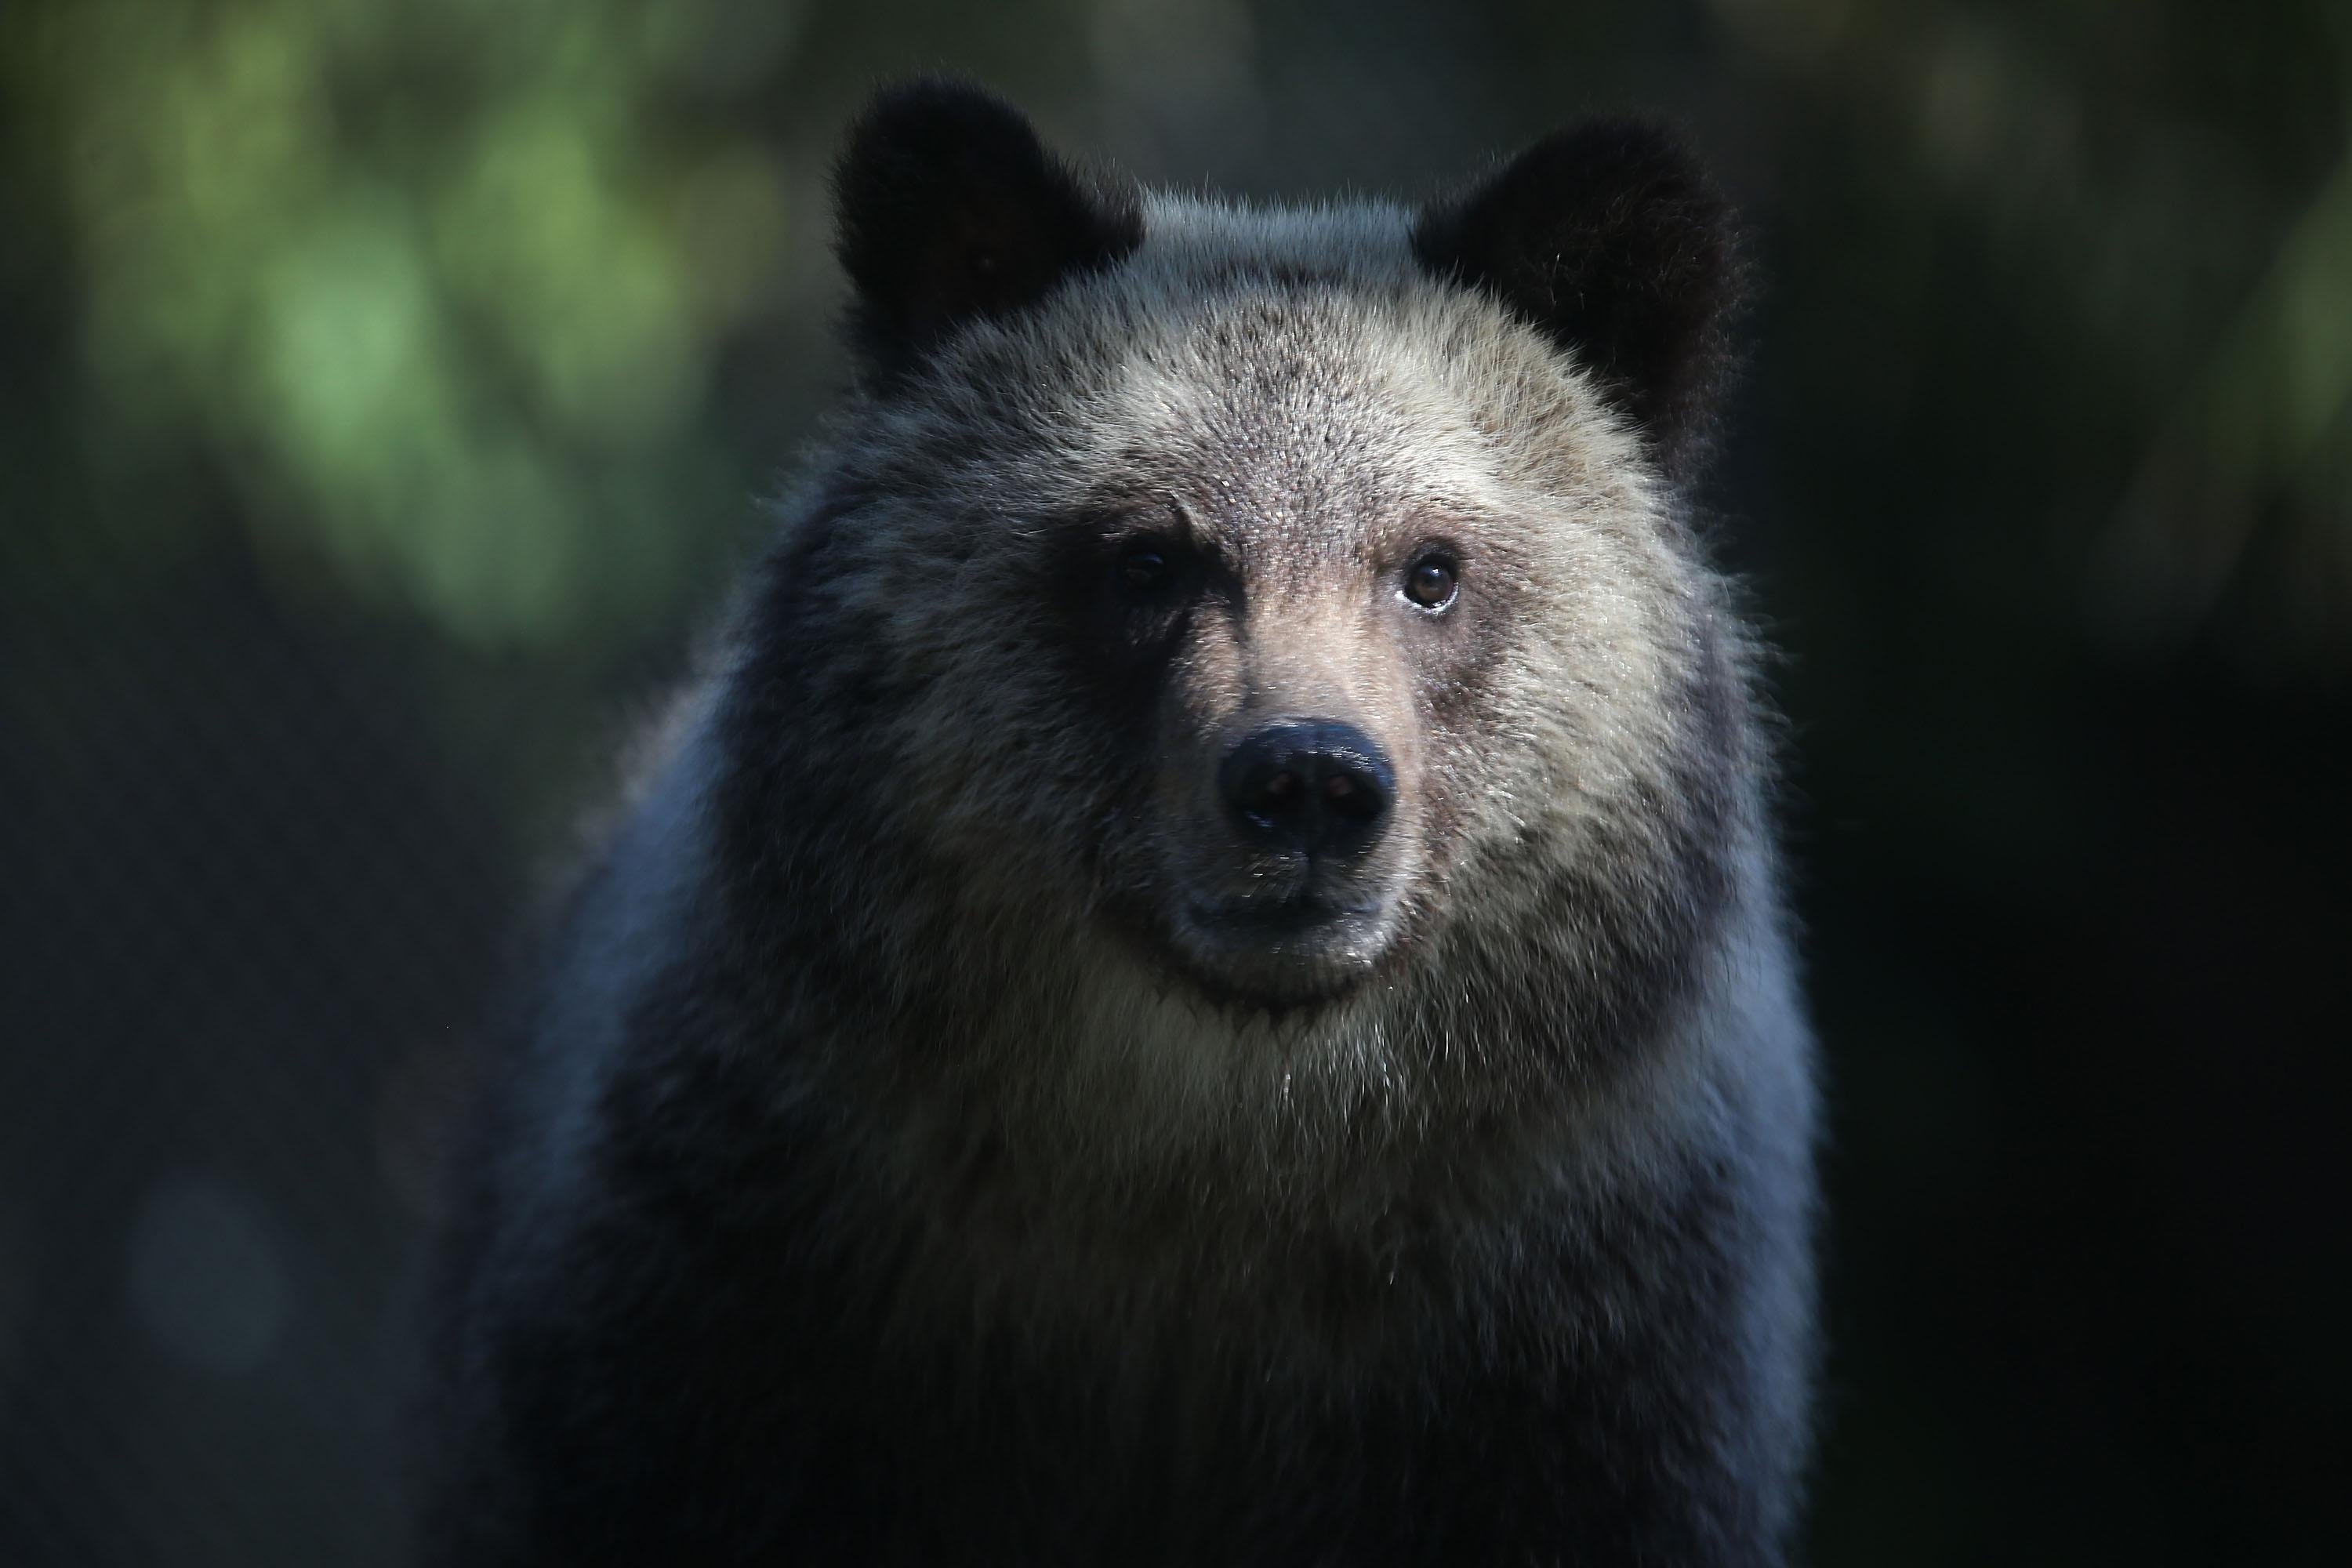 A bear cub.